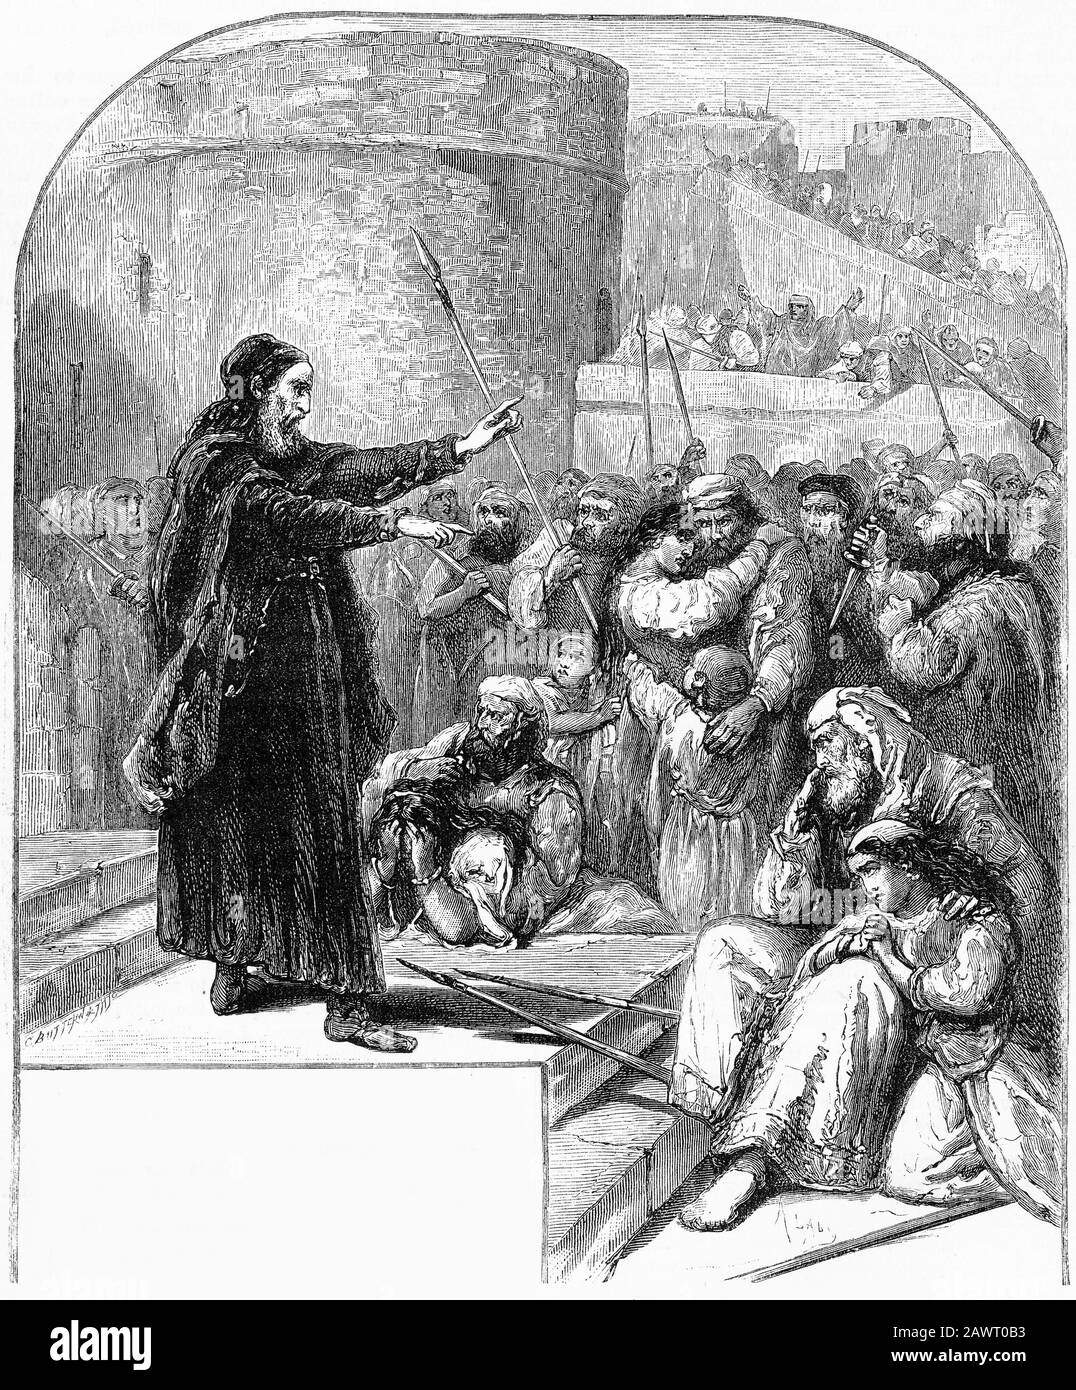 Die Gravur eines jüdischen Ältesten ermutigte die Juden, in einer Zeit der Verfolgung treu zu stehen. Dies war eine Szene, die in vielen Ländern über viele Jahrhunderte in Europa eingeführt wurde. Stockfoto